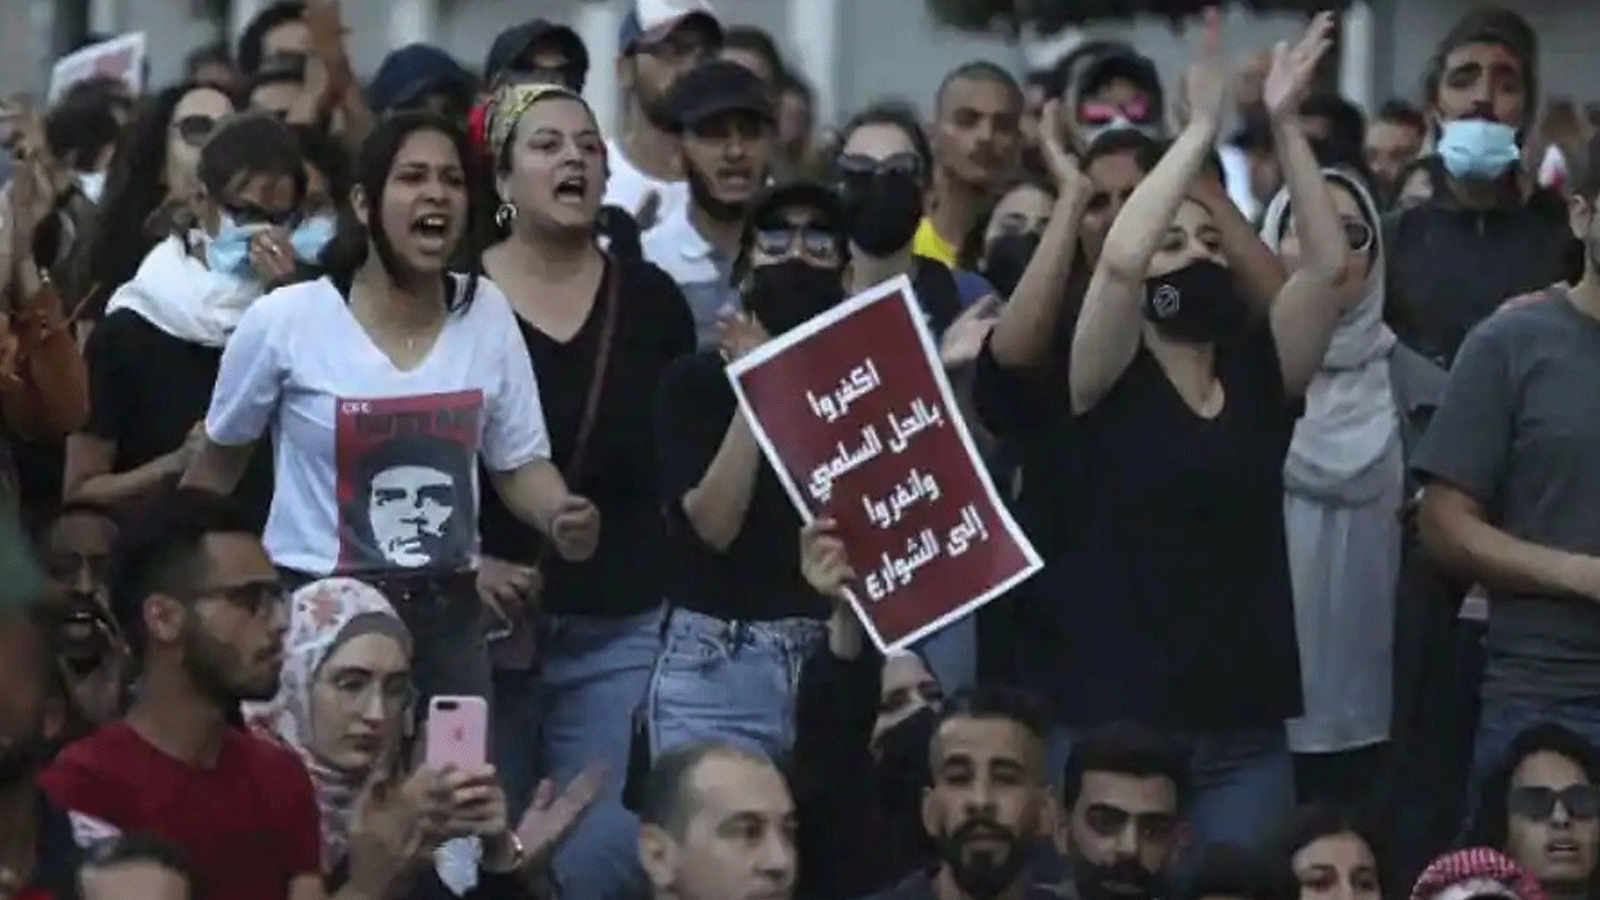 متظاهرون فلسطينيون يرفعون لافتات تندد بالسلطة خلال مسيرة في مدينة رام الله بالضفة الغربية المحتلة في 3 تموز/يوليو 2021 على خلفية مقتل الناشط نزار بنات أثناء احتجازه لدى قوات الأمن